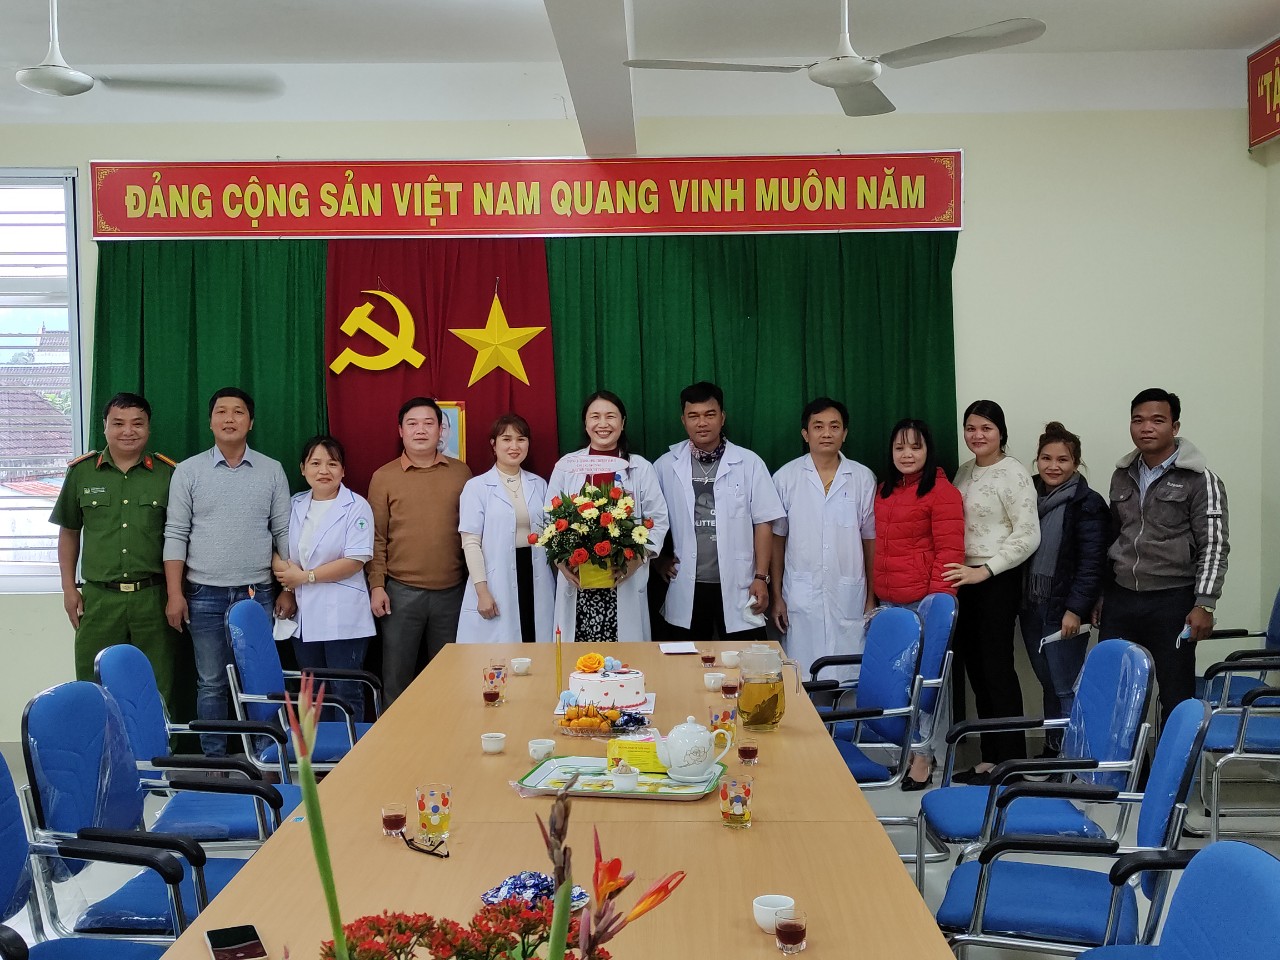 Lãnh đạo xã thăm và tặng quà cán bộ y, bác sĩ Trạm Y tế xã Ba Vì nhân dịp kỷ niệm 67 năm Ngày Thầy thuốc Việt Nam (27/2/1955 - 27/2/2022)